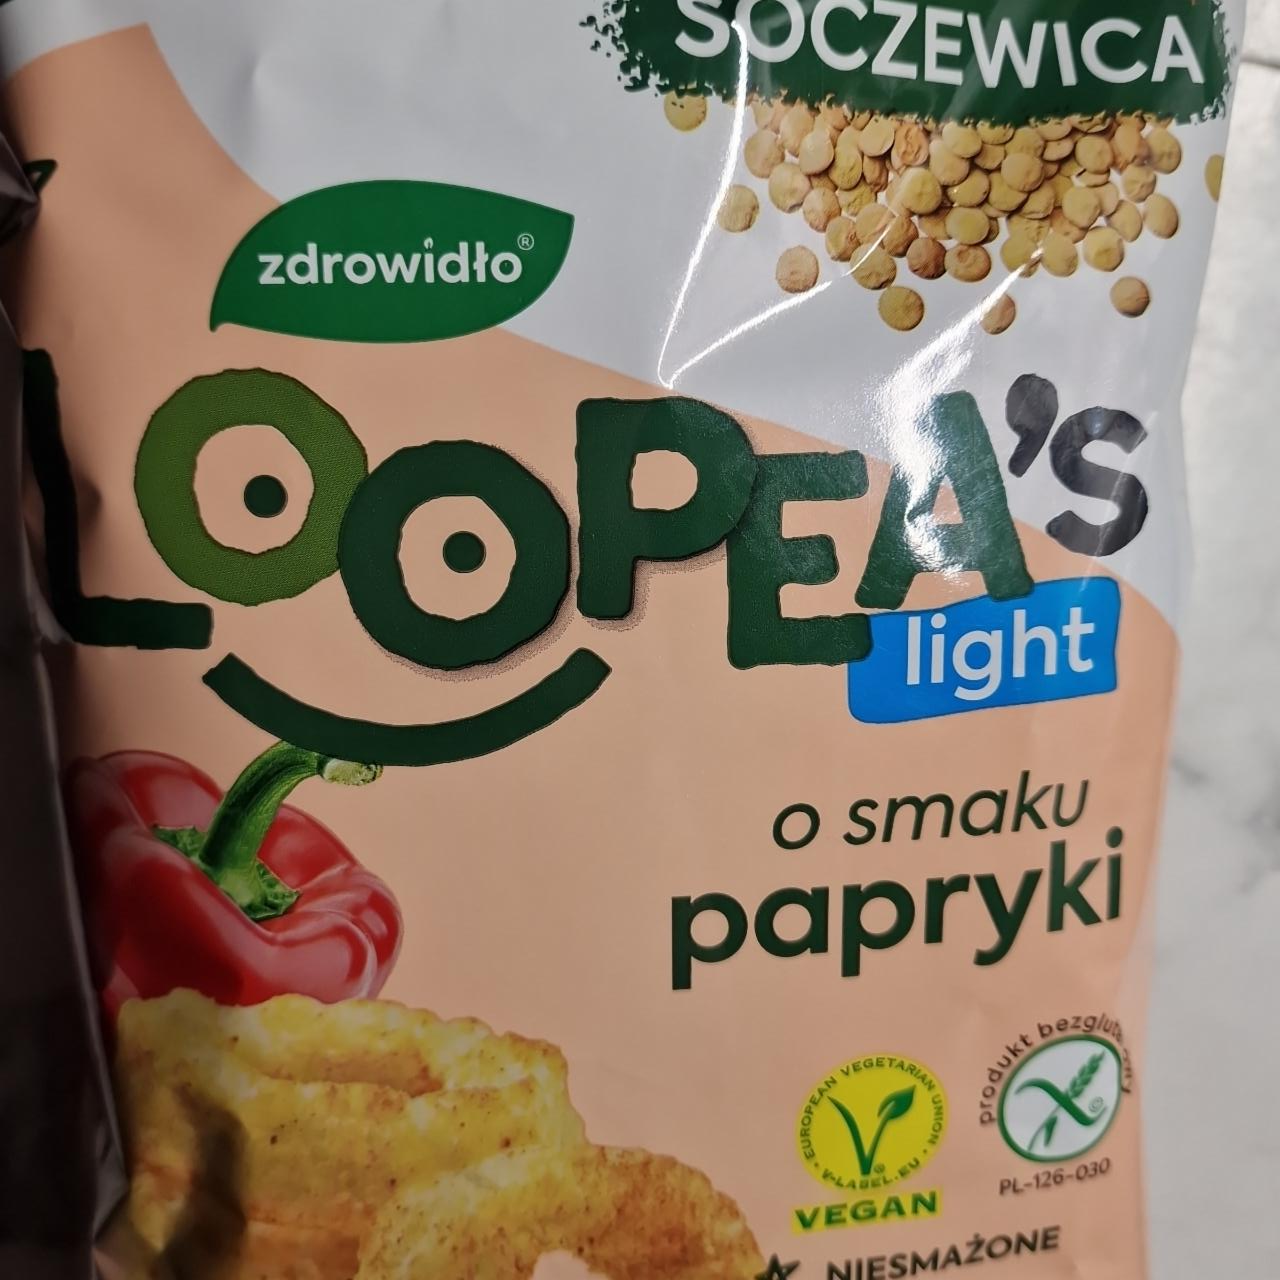 Zdjęcia - Loopea's light o smaku papryki zdrowidło